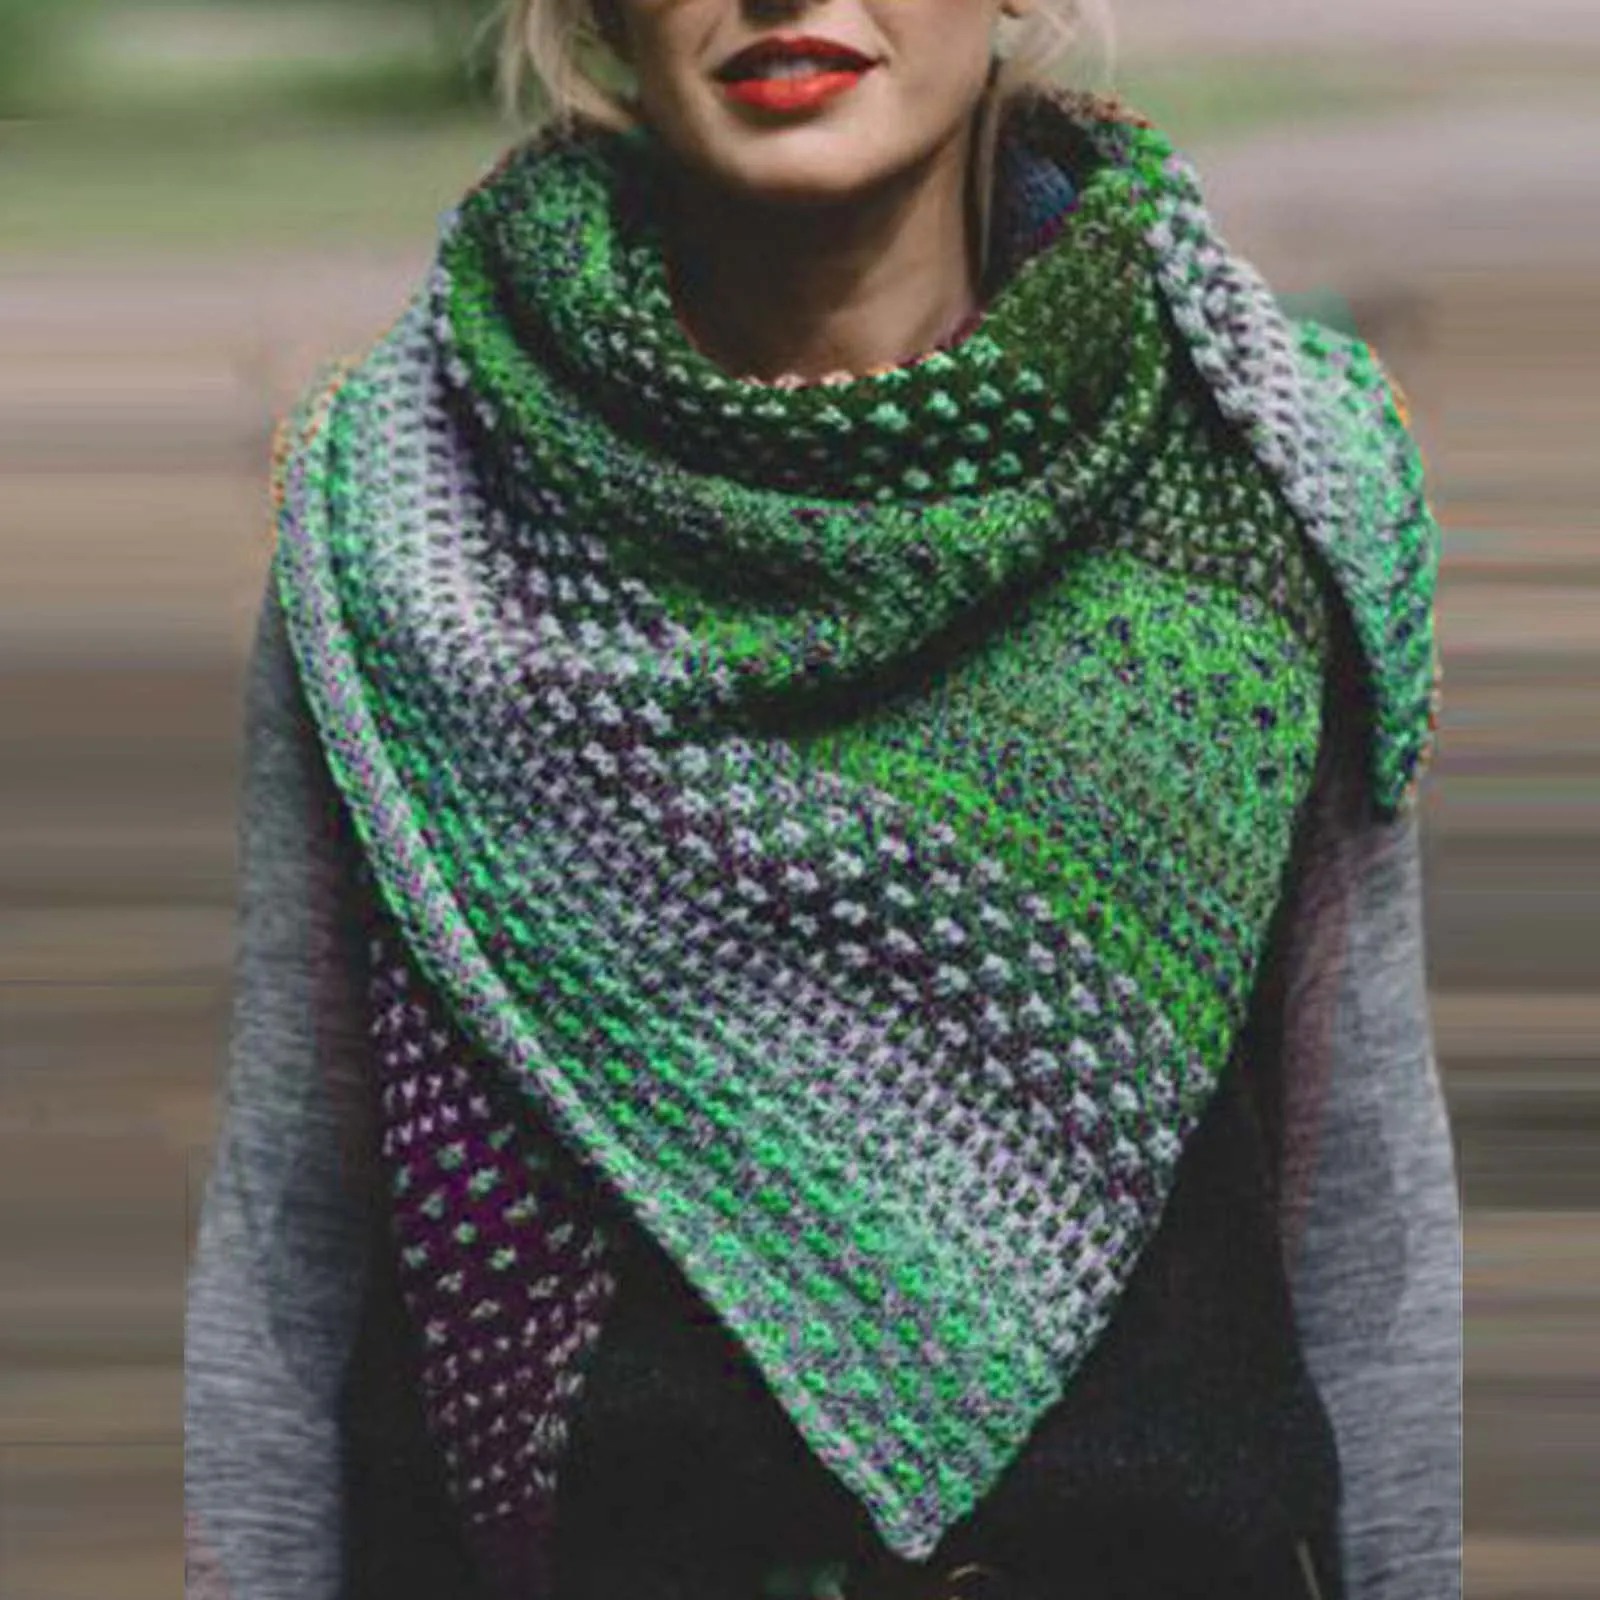 Las mujeres de Invierno Cálido Cara de Color Colorido Crochet Engrosamiento de punto Suave Chal Bufanda Vintage Otoño Plaid Bufanda Larga Chales шарф hiyab 0